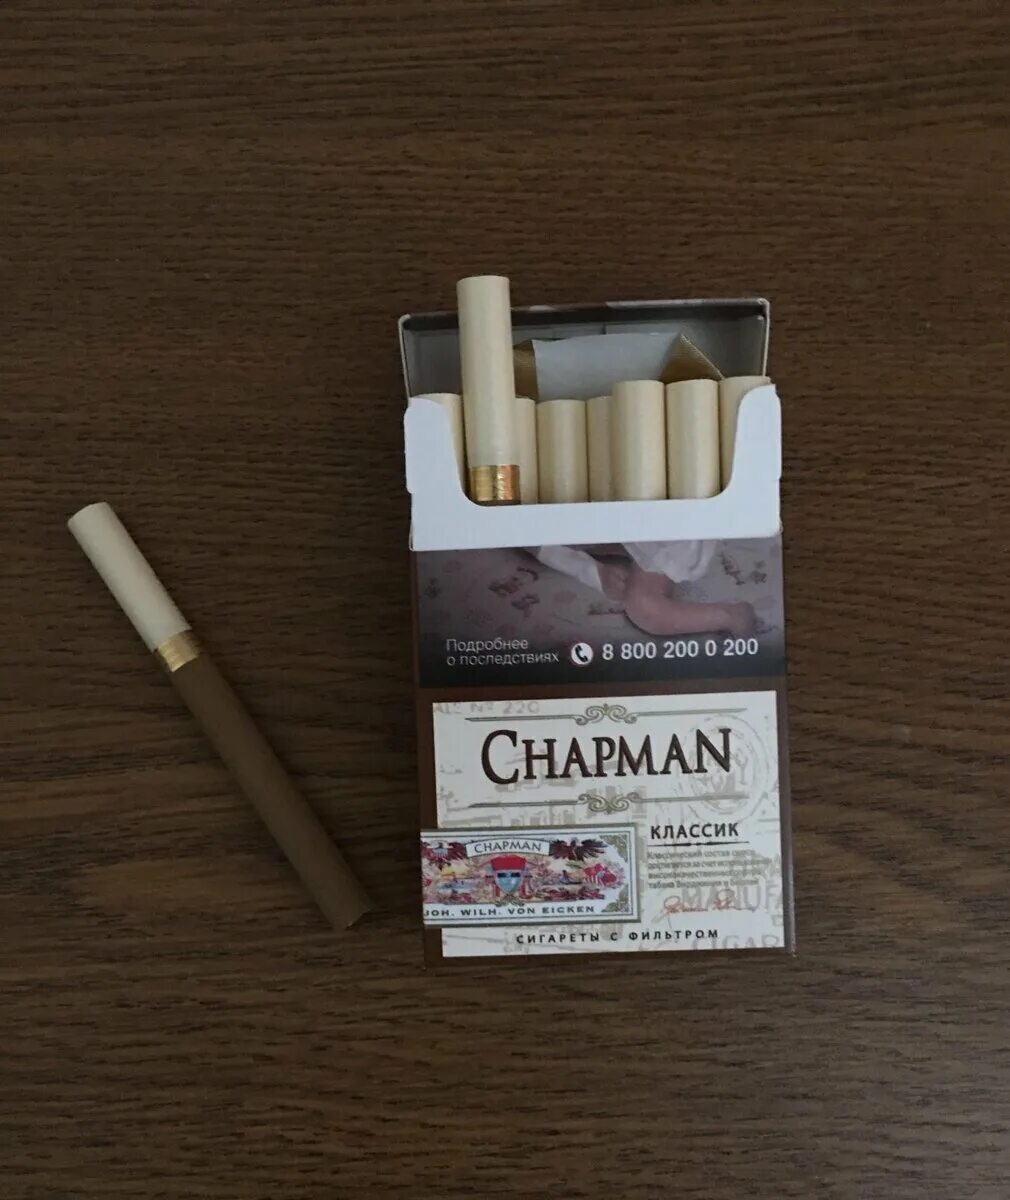 Сигареты Чапман Браун тонкие. Чапмен сигареты Классик. Chapman сигареты вкусы Браун. Чапман сигареты класси. Чапман компакт сигареты